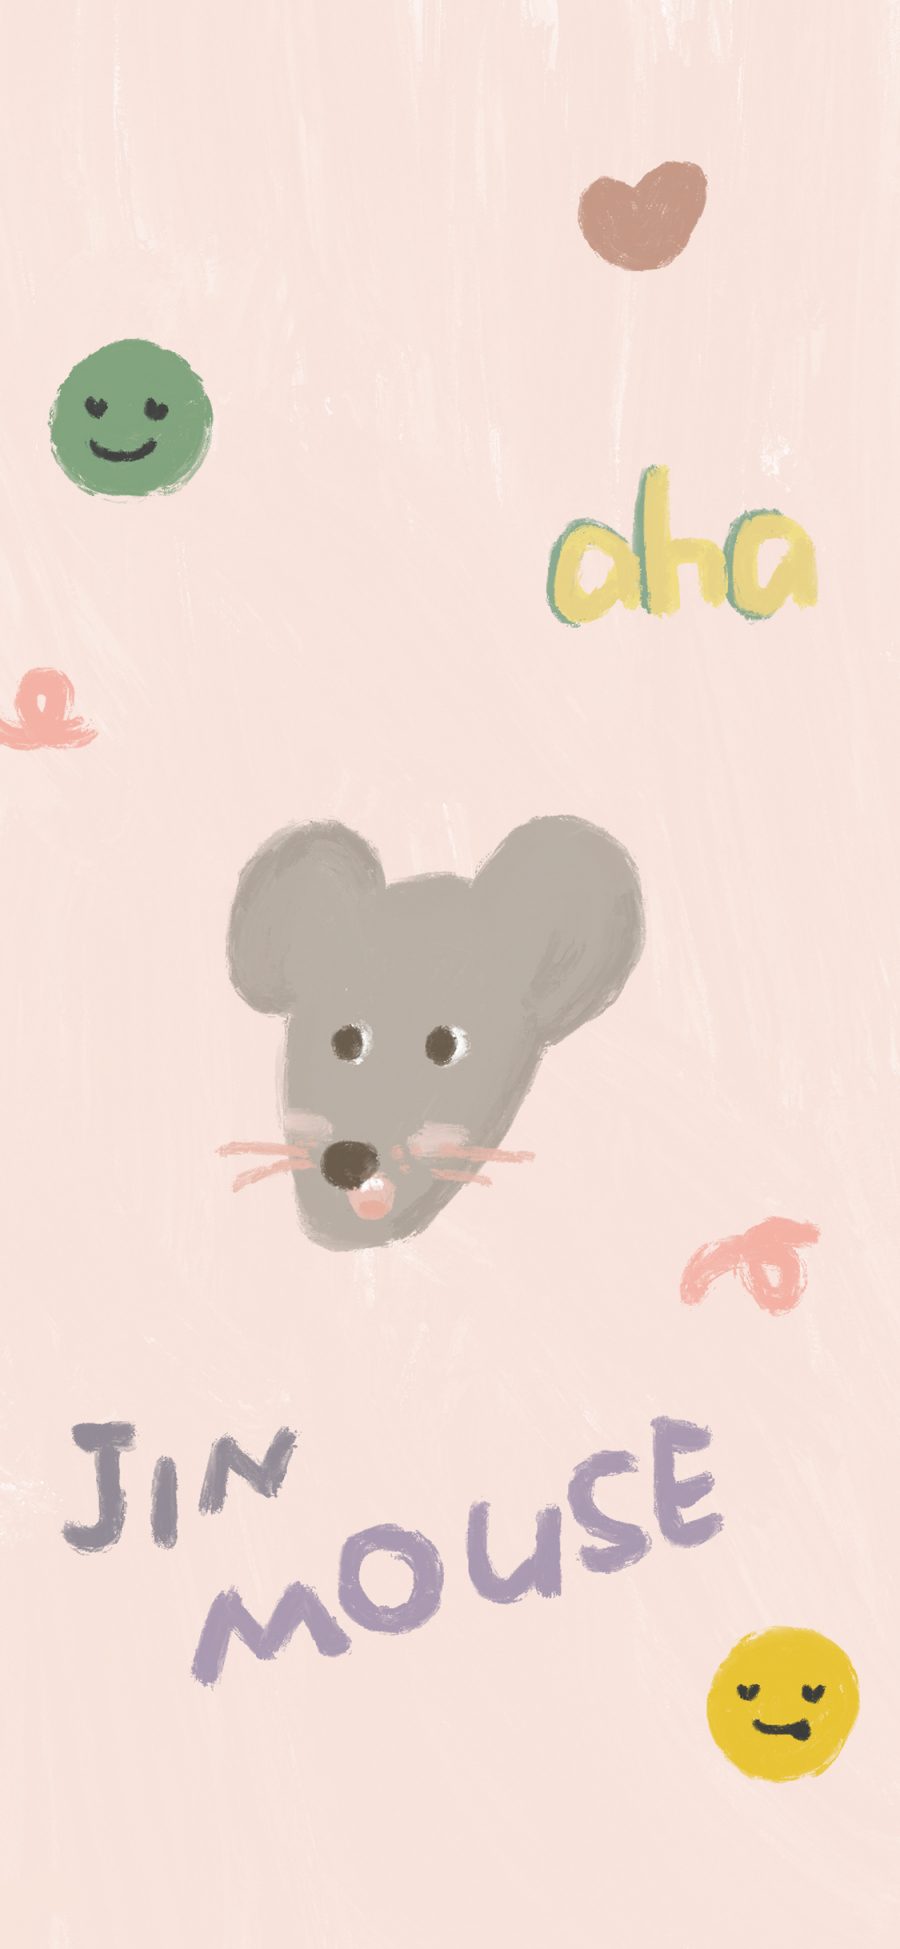 [2436×1125]卡通 老鼠 mouse 笑脸 苹果手机动漫壁纸图片